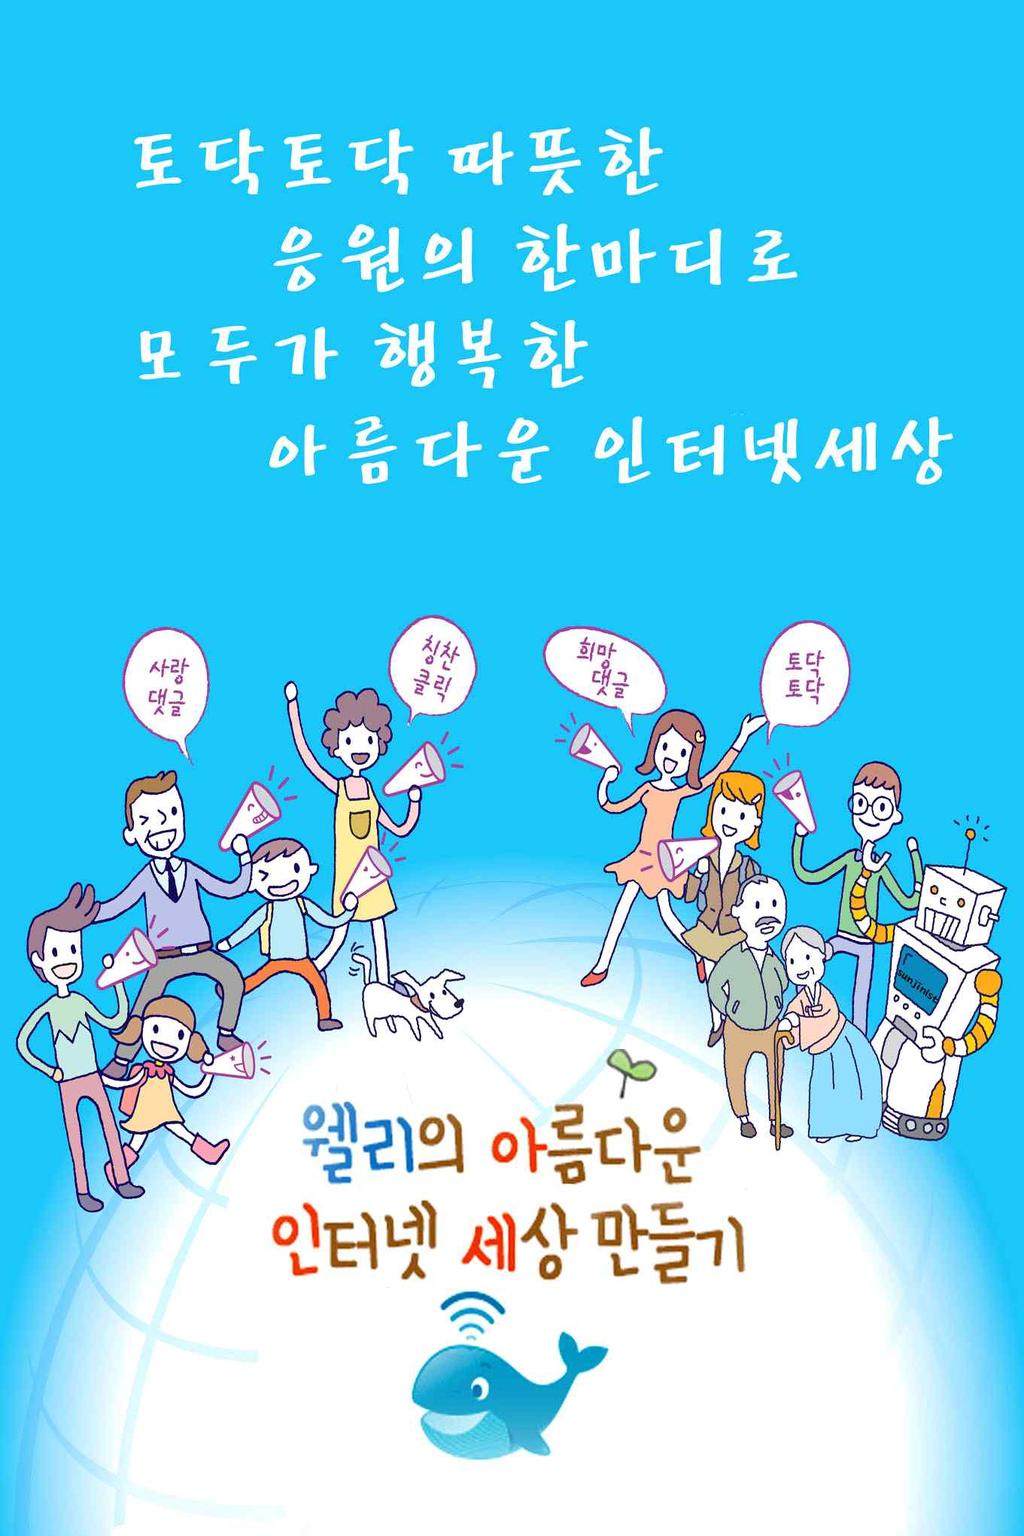 먼저, 인터넷윤리의식을제고하기위해청소년을대상으로 2012 년 3월, 서울시교육청과공동으로서울시초 중 고 1,284 개교에인터넷윤리실천수칙포스터를배포하였다.